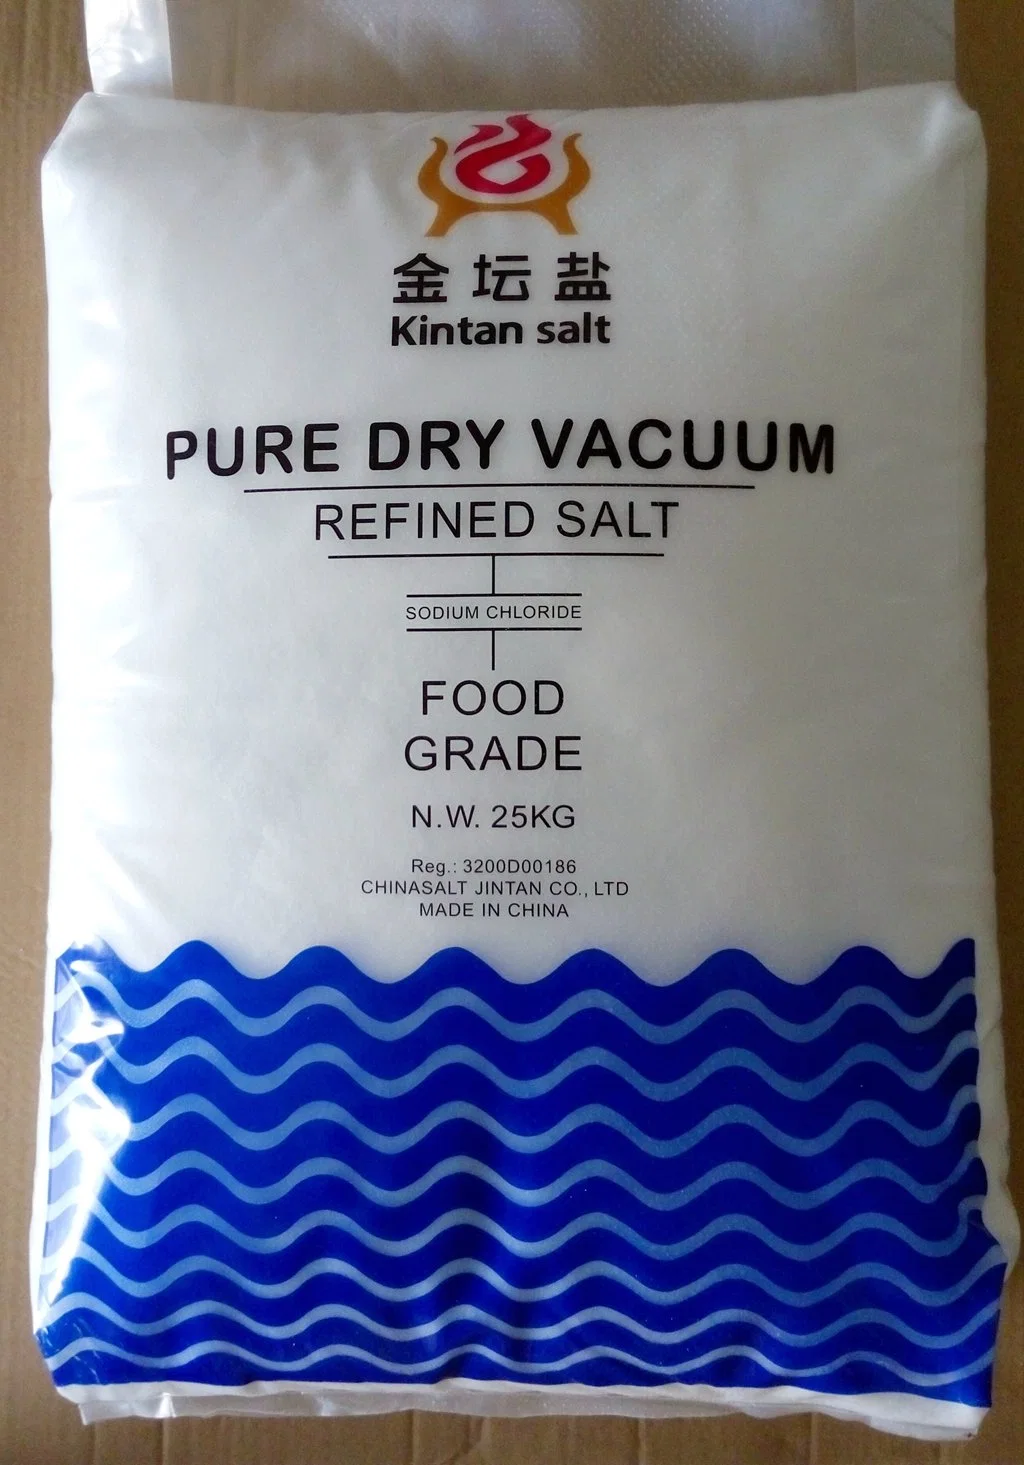 Соль для пищевых продуктов 99.7% соль для пищевых продуктов йодированная соль для пищевых продуктов 99.8% Соль для стола для приготовления соли PDV